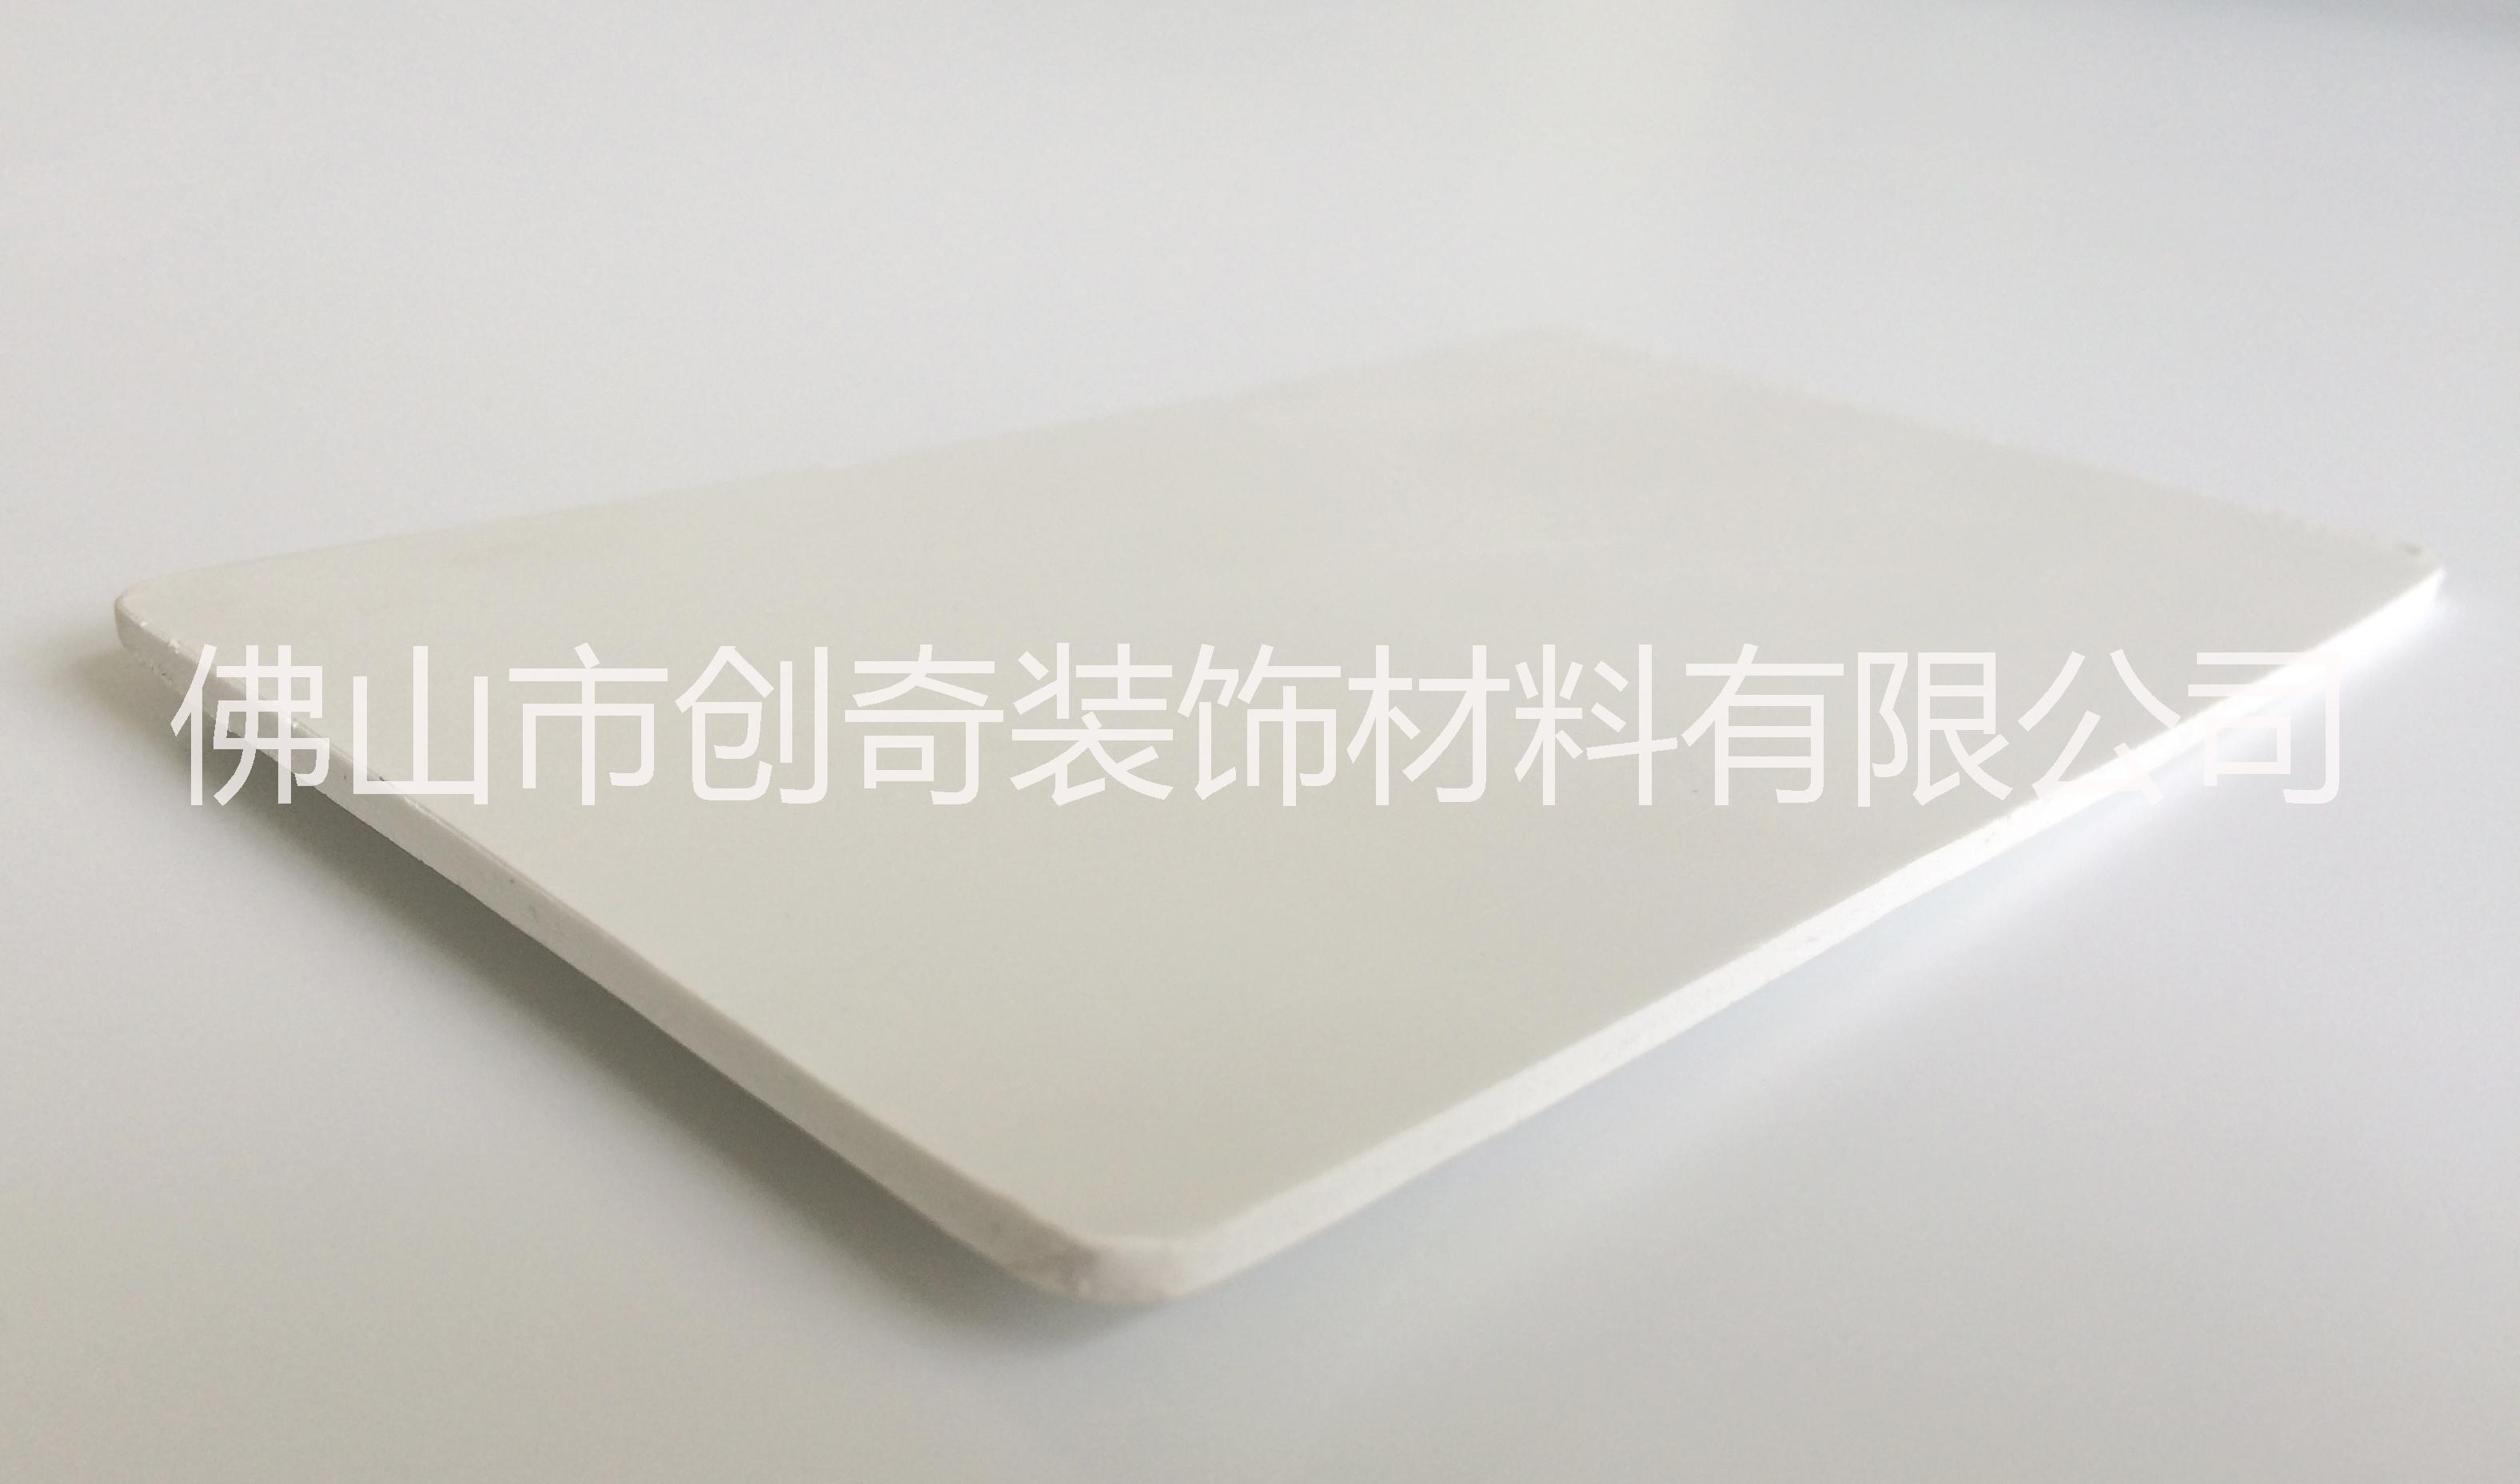 PVC板高中低密1.8厘自由发泡板材 广告展示板胸卡 UV打印图片